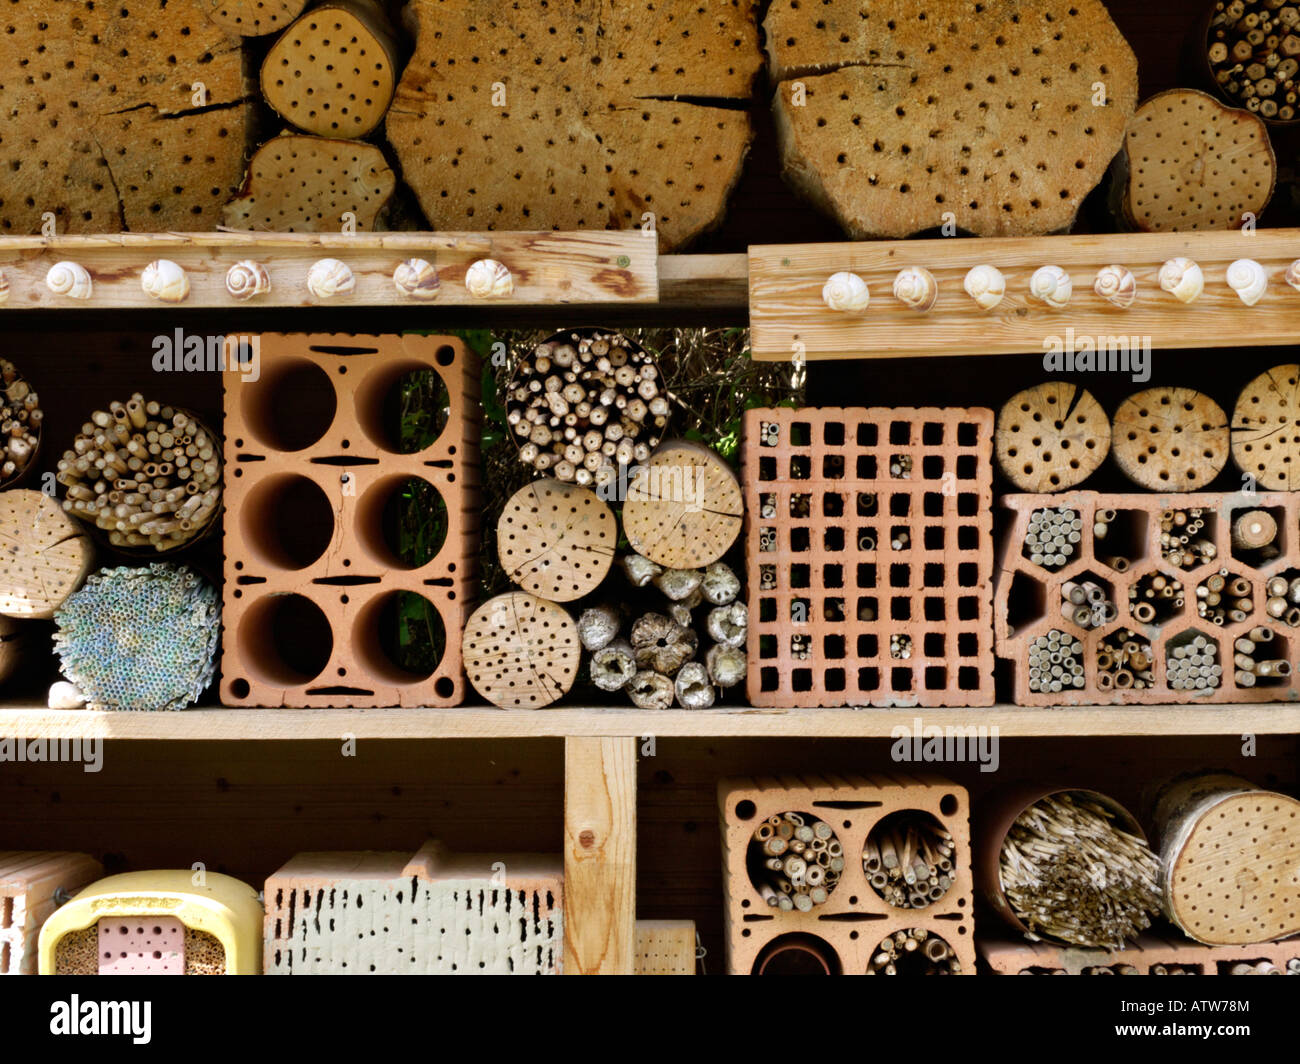 L'aide de nidification pour les abeilles et autres insectes Banque D'Images